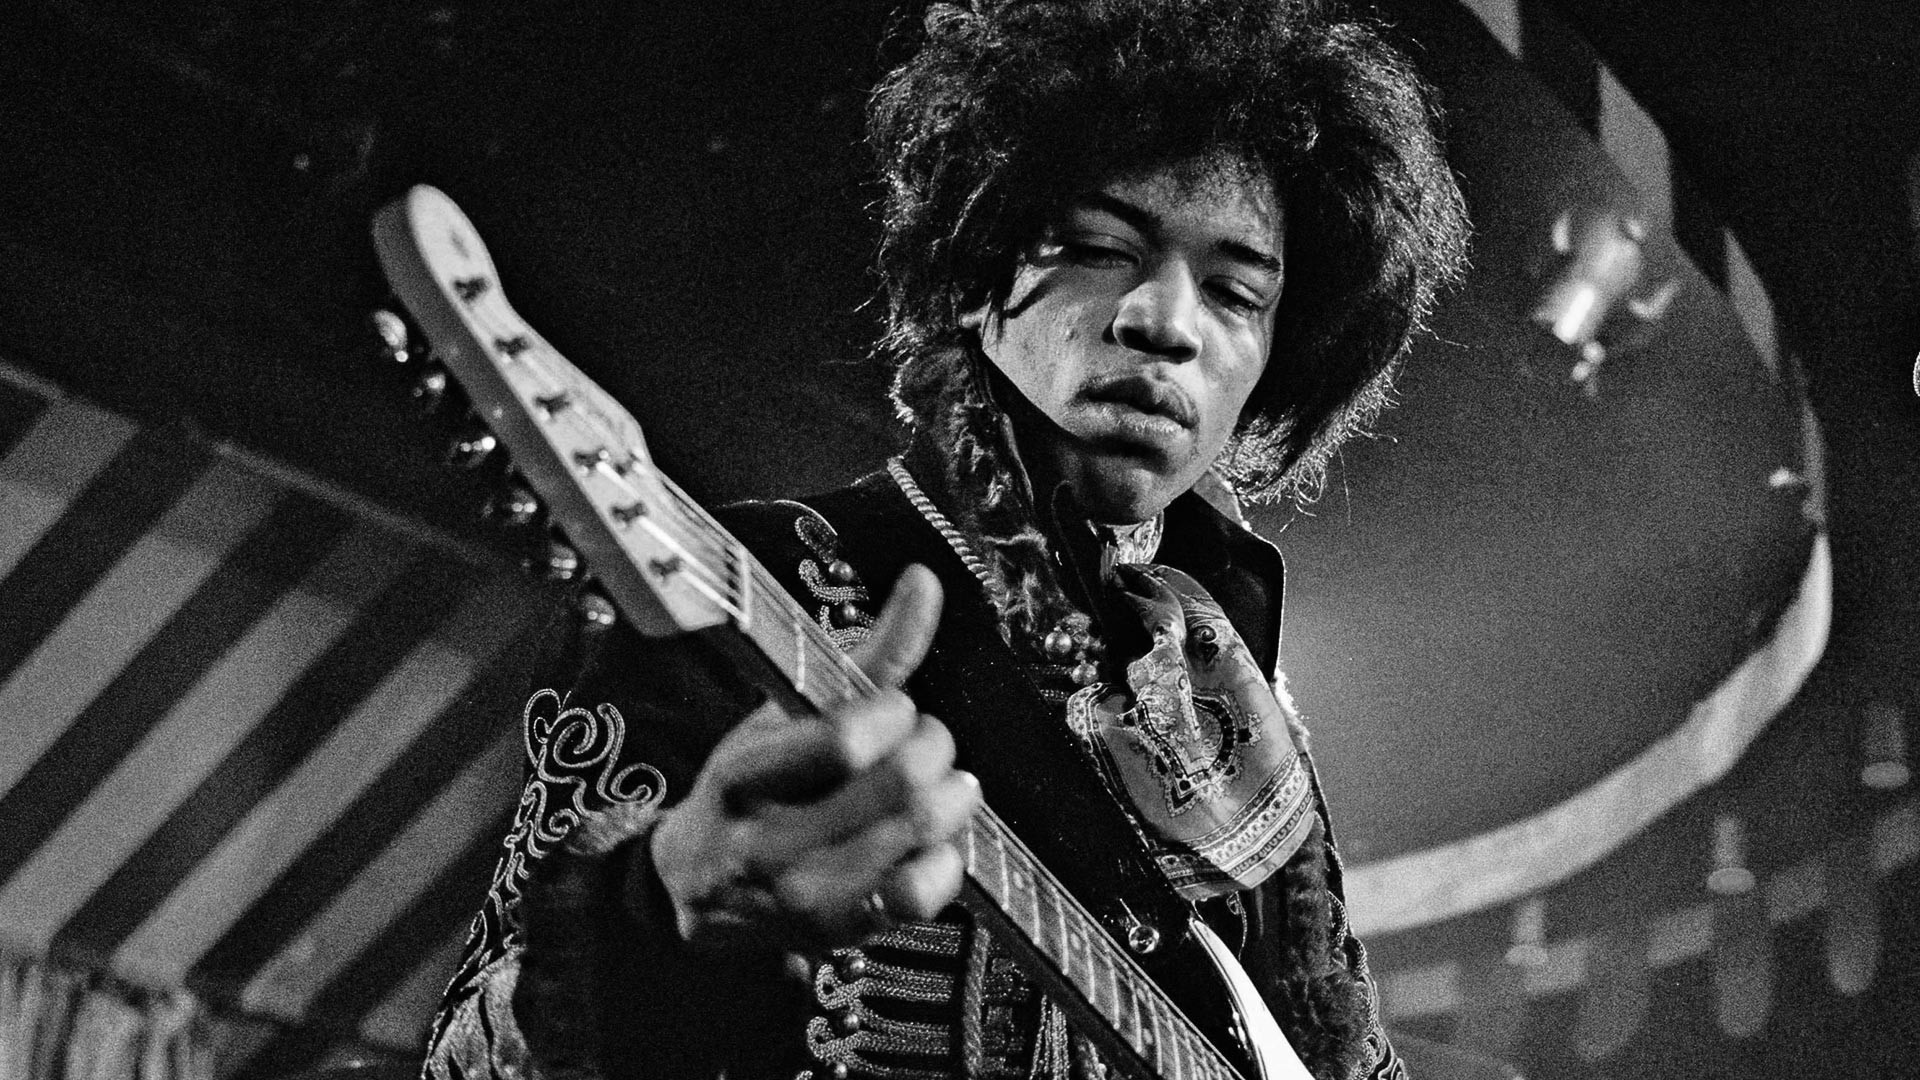 Jimi Hendrix (Celebs), Free download, Jimi Hendrix wallpapers, Desktop, Mobile, 1920x1080 Full HD Desktop